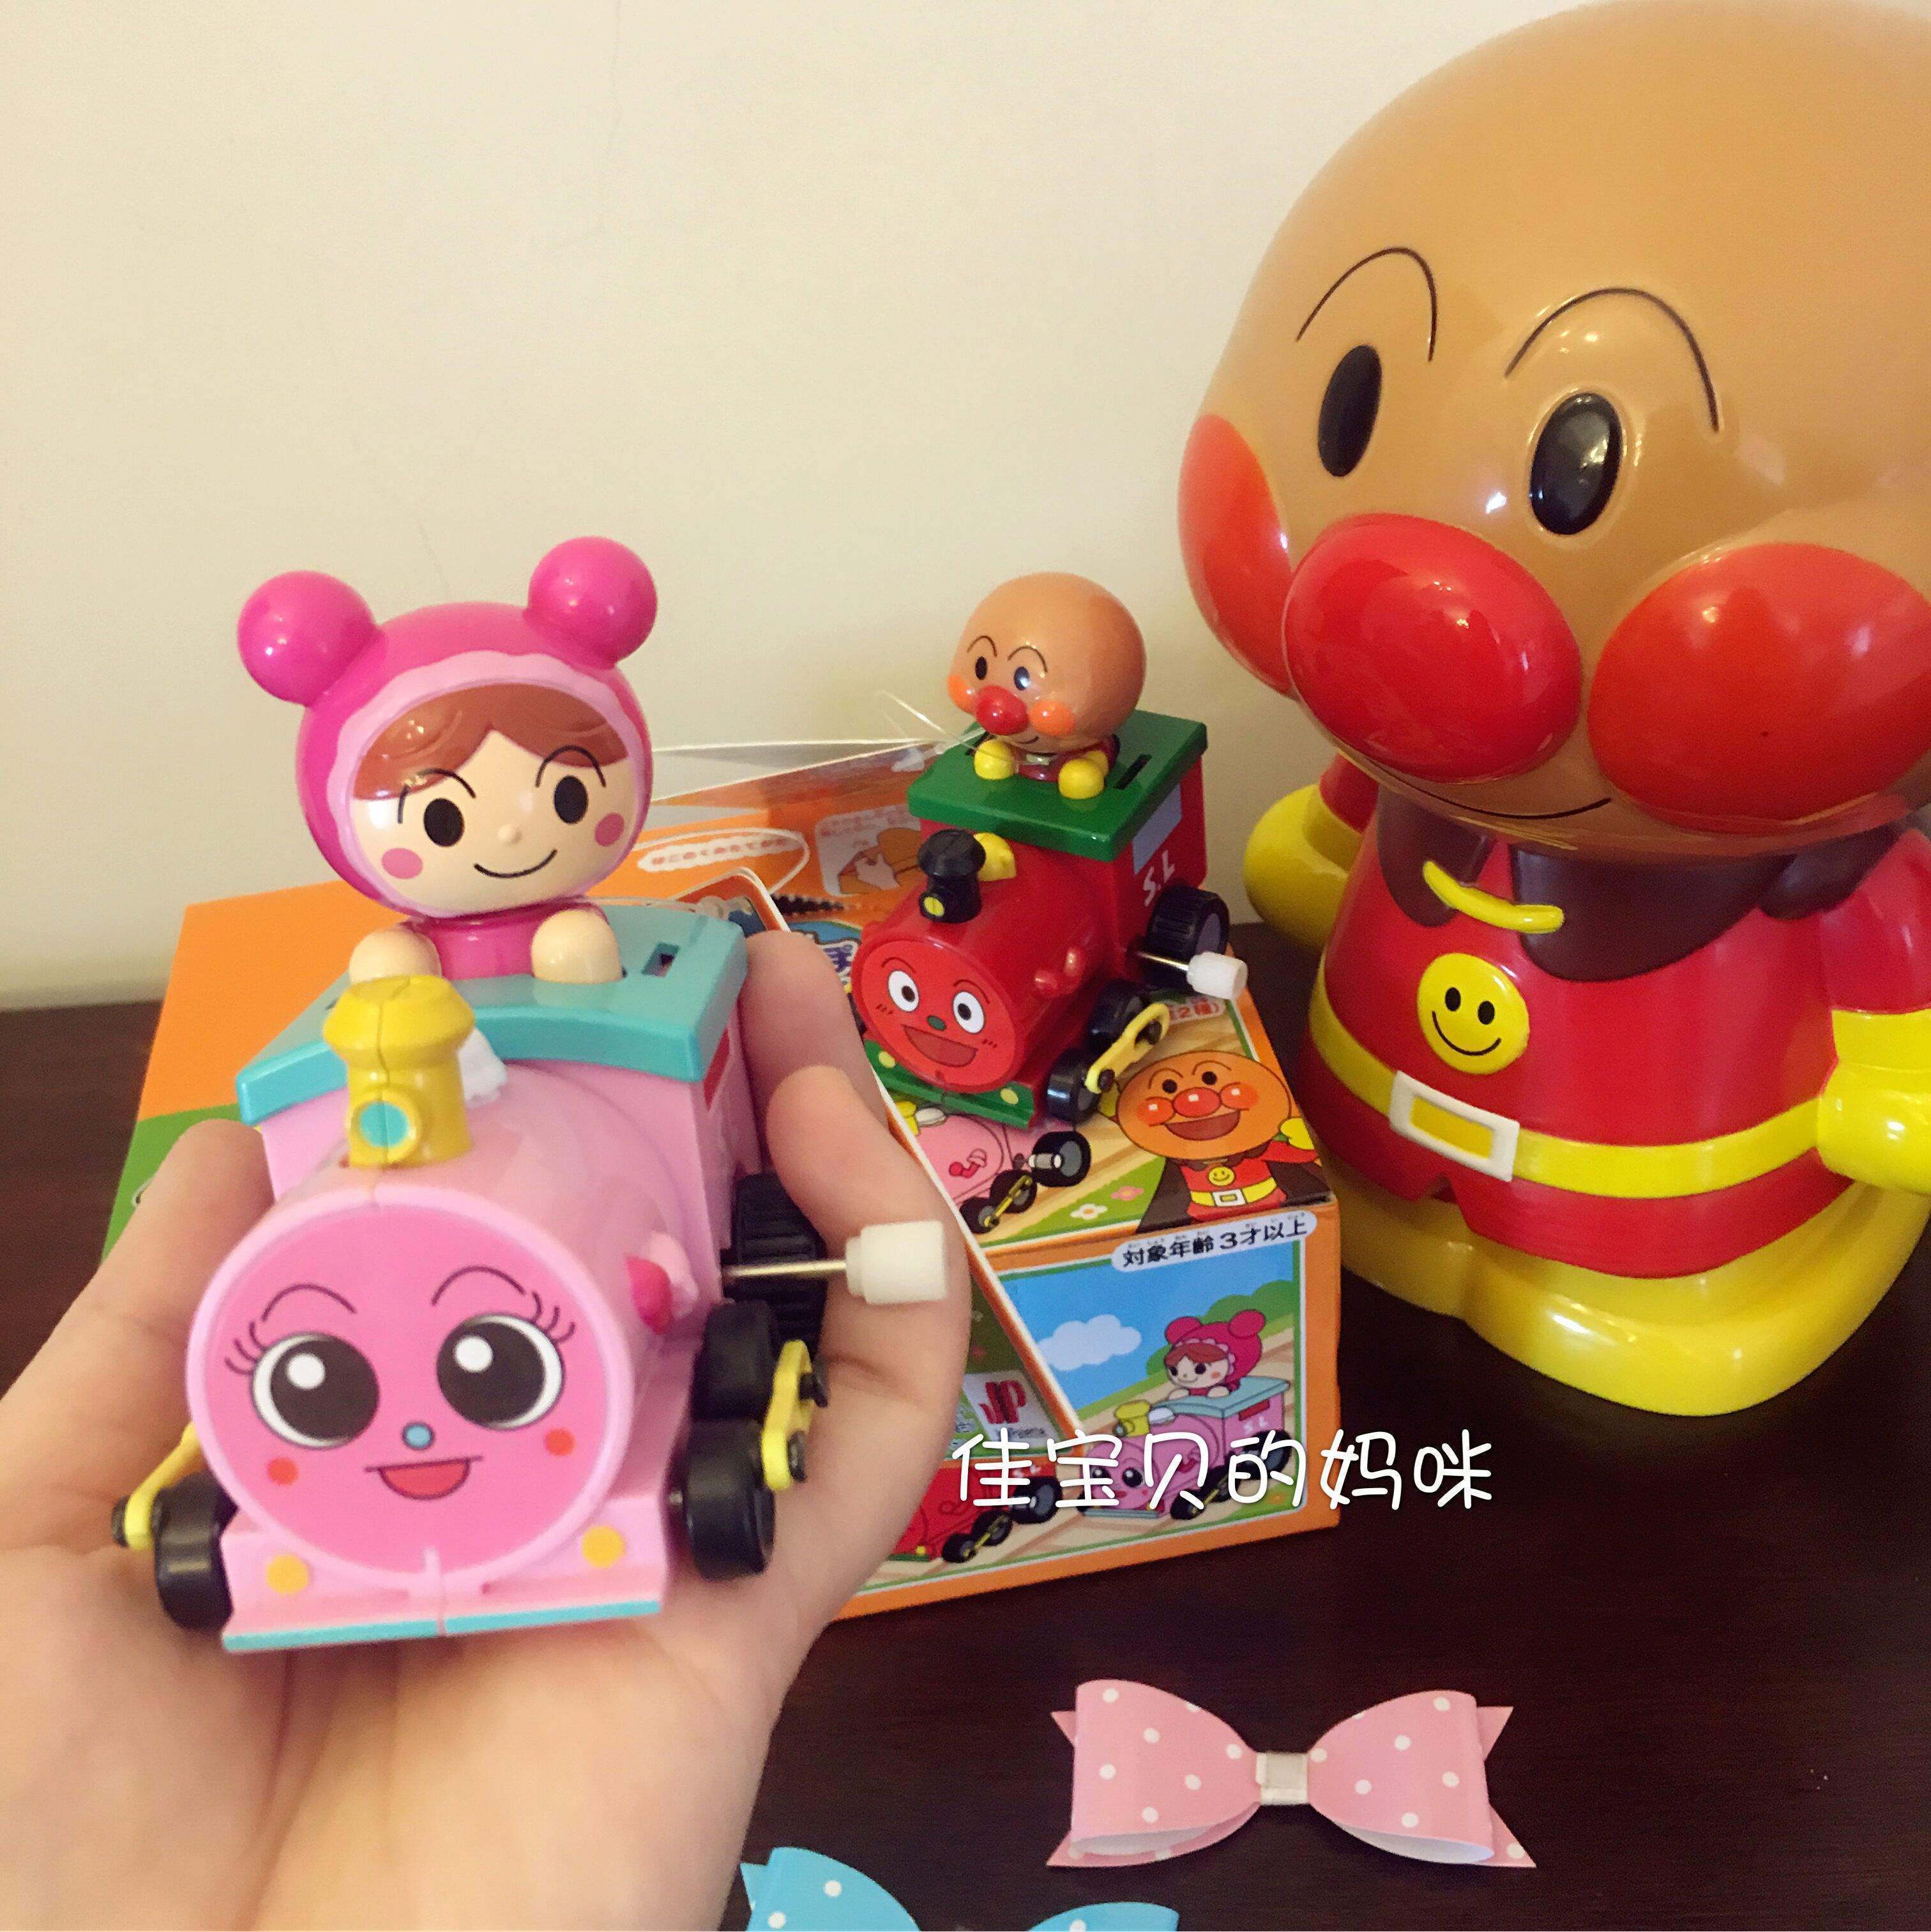 现货日本进口面包超人宝宝儿童发条玩具车动感可爱小火车无需电池